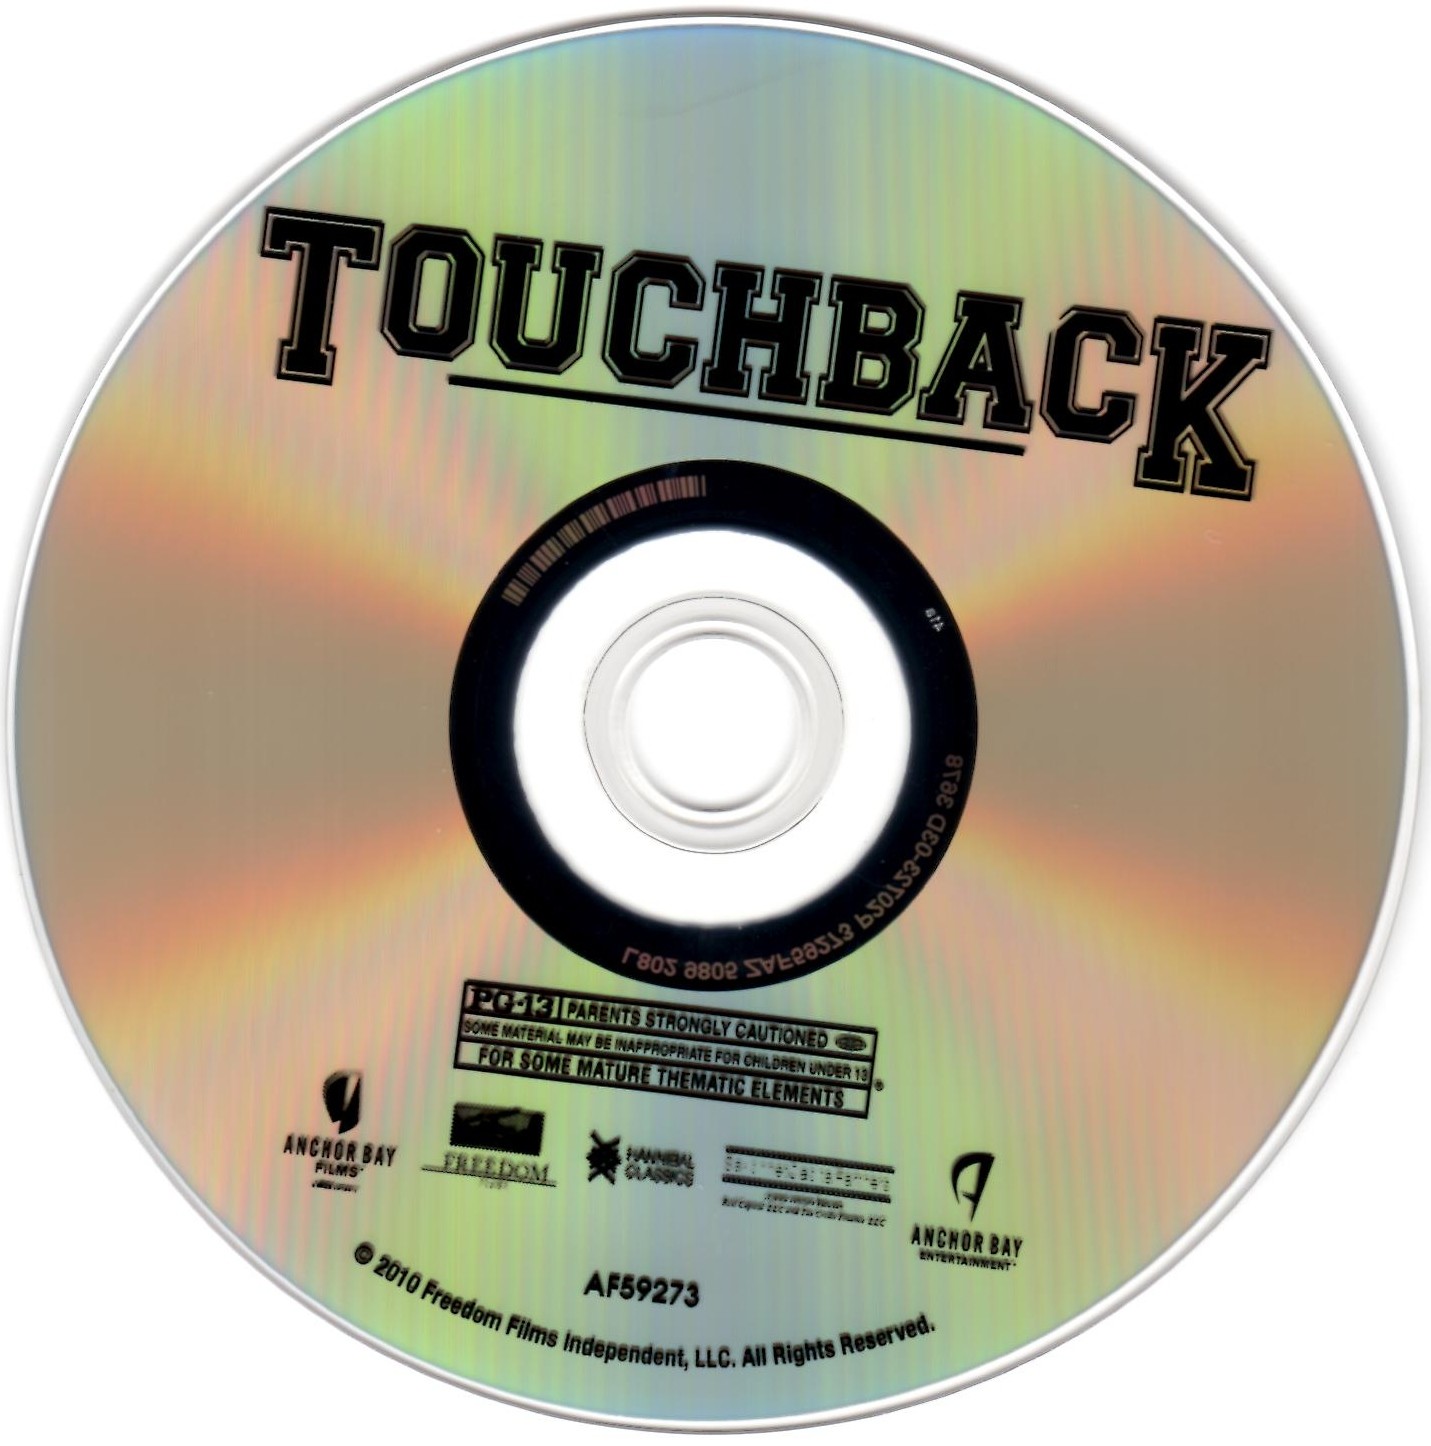 Touchback Zone 1